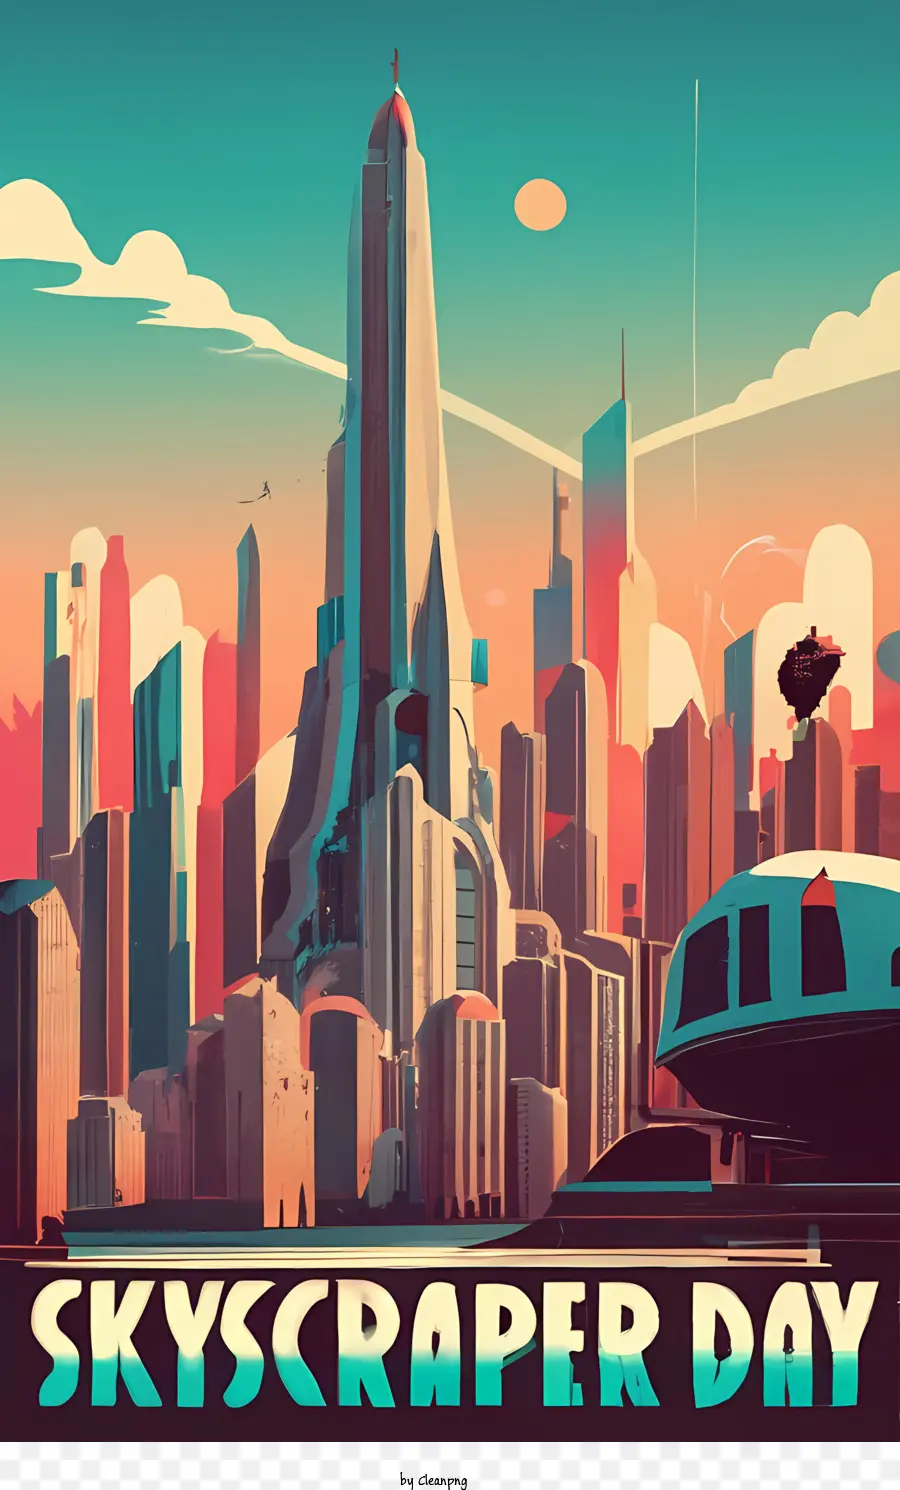 skyscraper day sky scraper city sci - fi futuristic